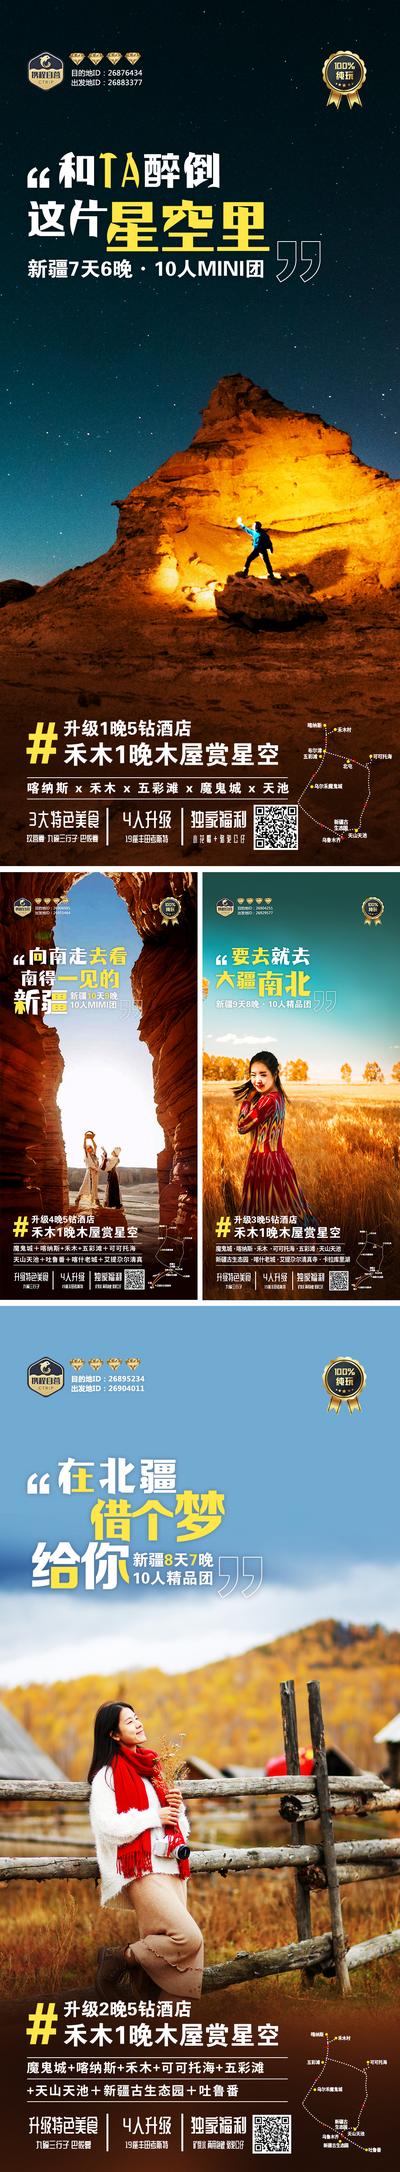 南门网 广告 海报 旅游 新疆 旅行 长图 系列